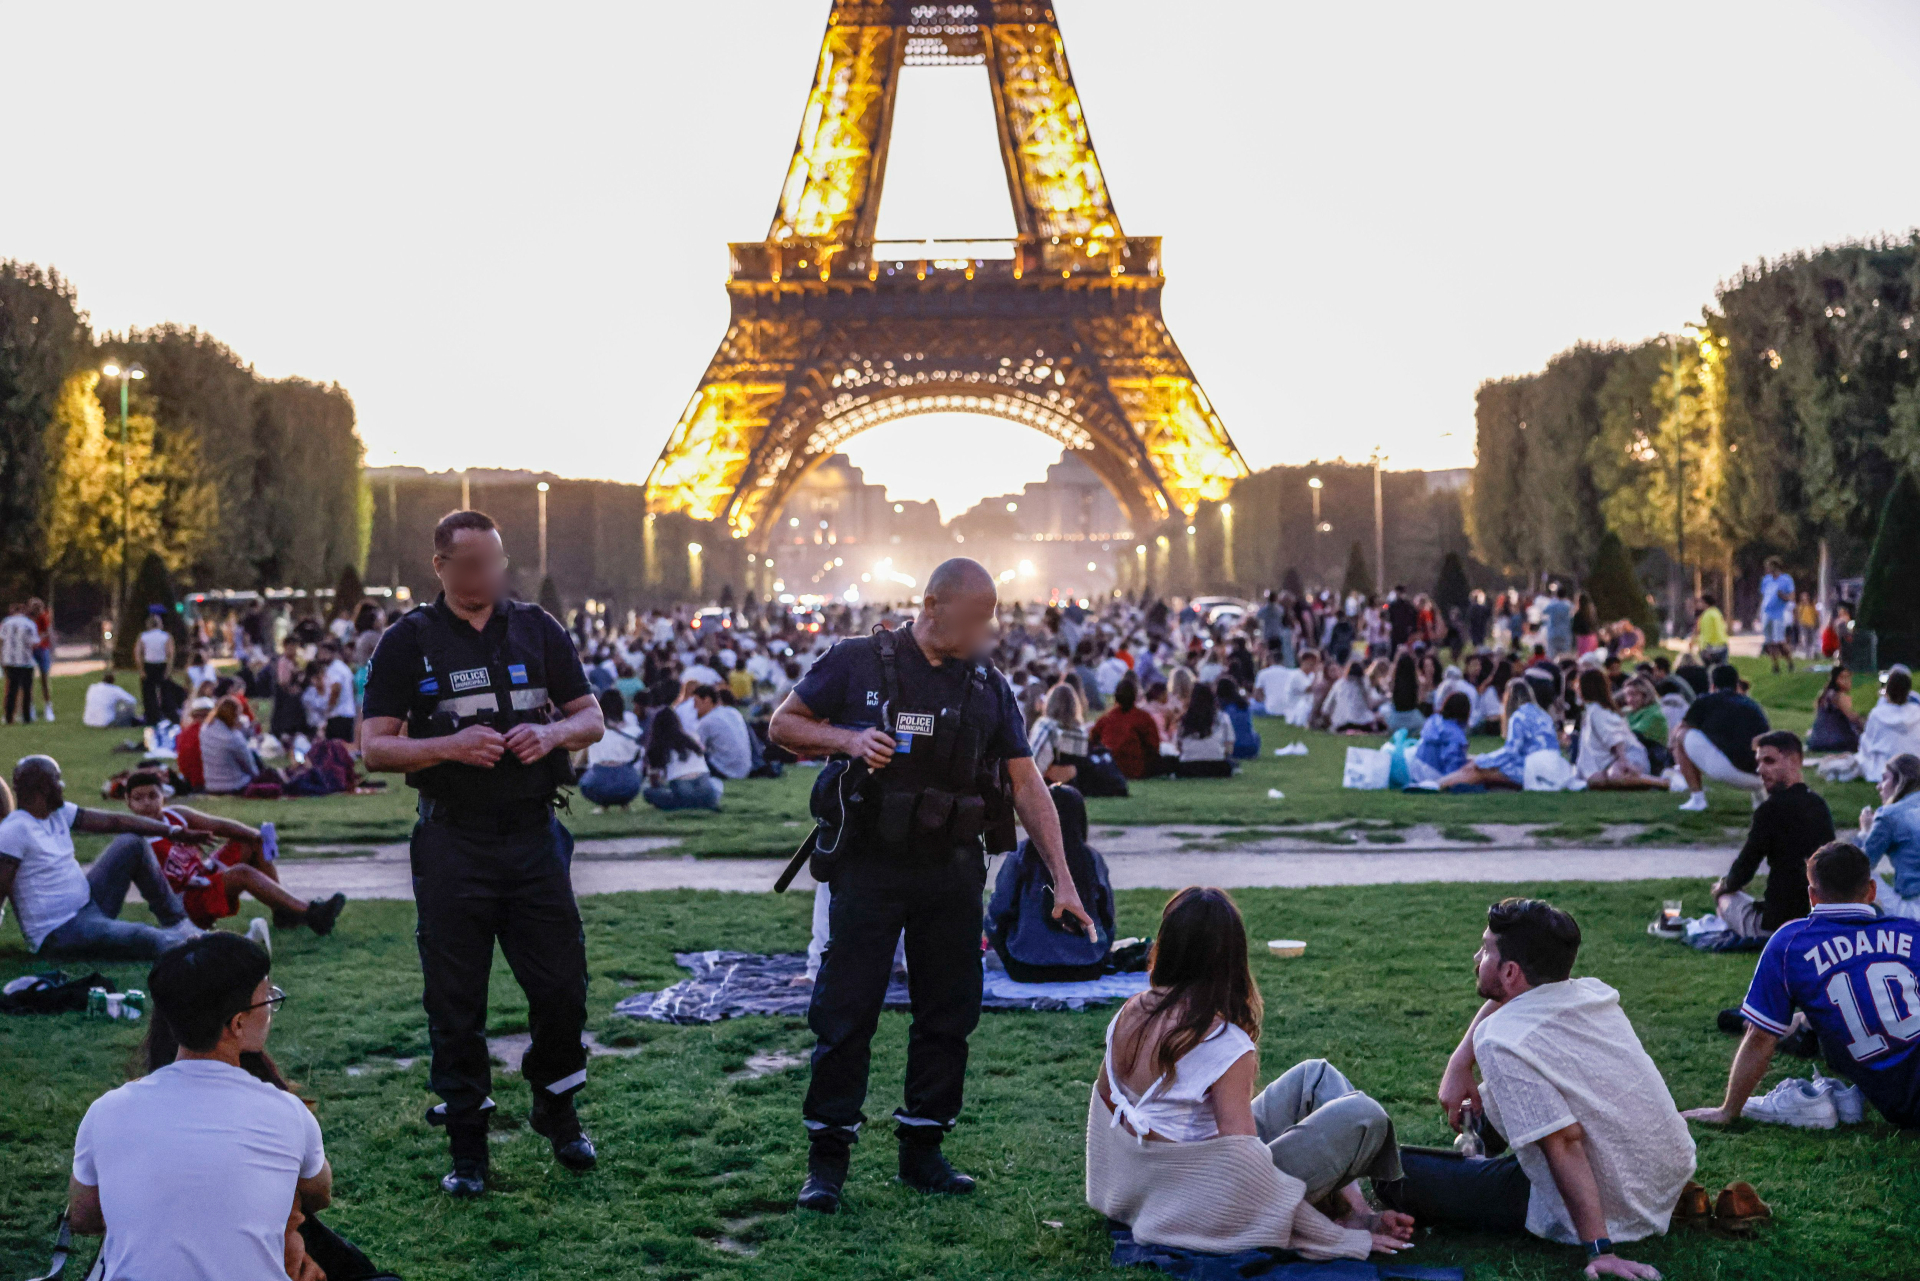 Champ-de-Mars à Paris (VIIe), le 9 août 2023. Les forces de l'ordre patrouillent pour protéger les nombreux touristes, notamment des pickpockets. LP/Olivier Corsan